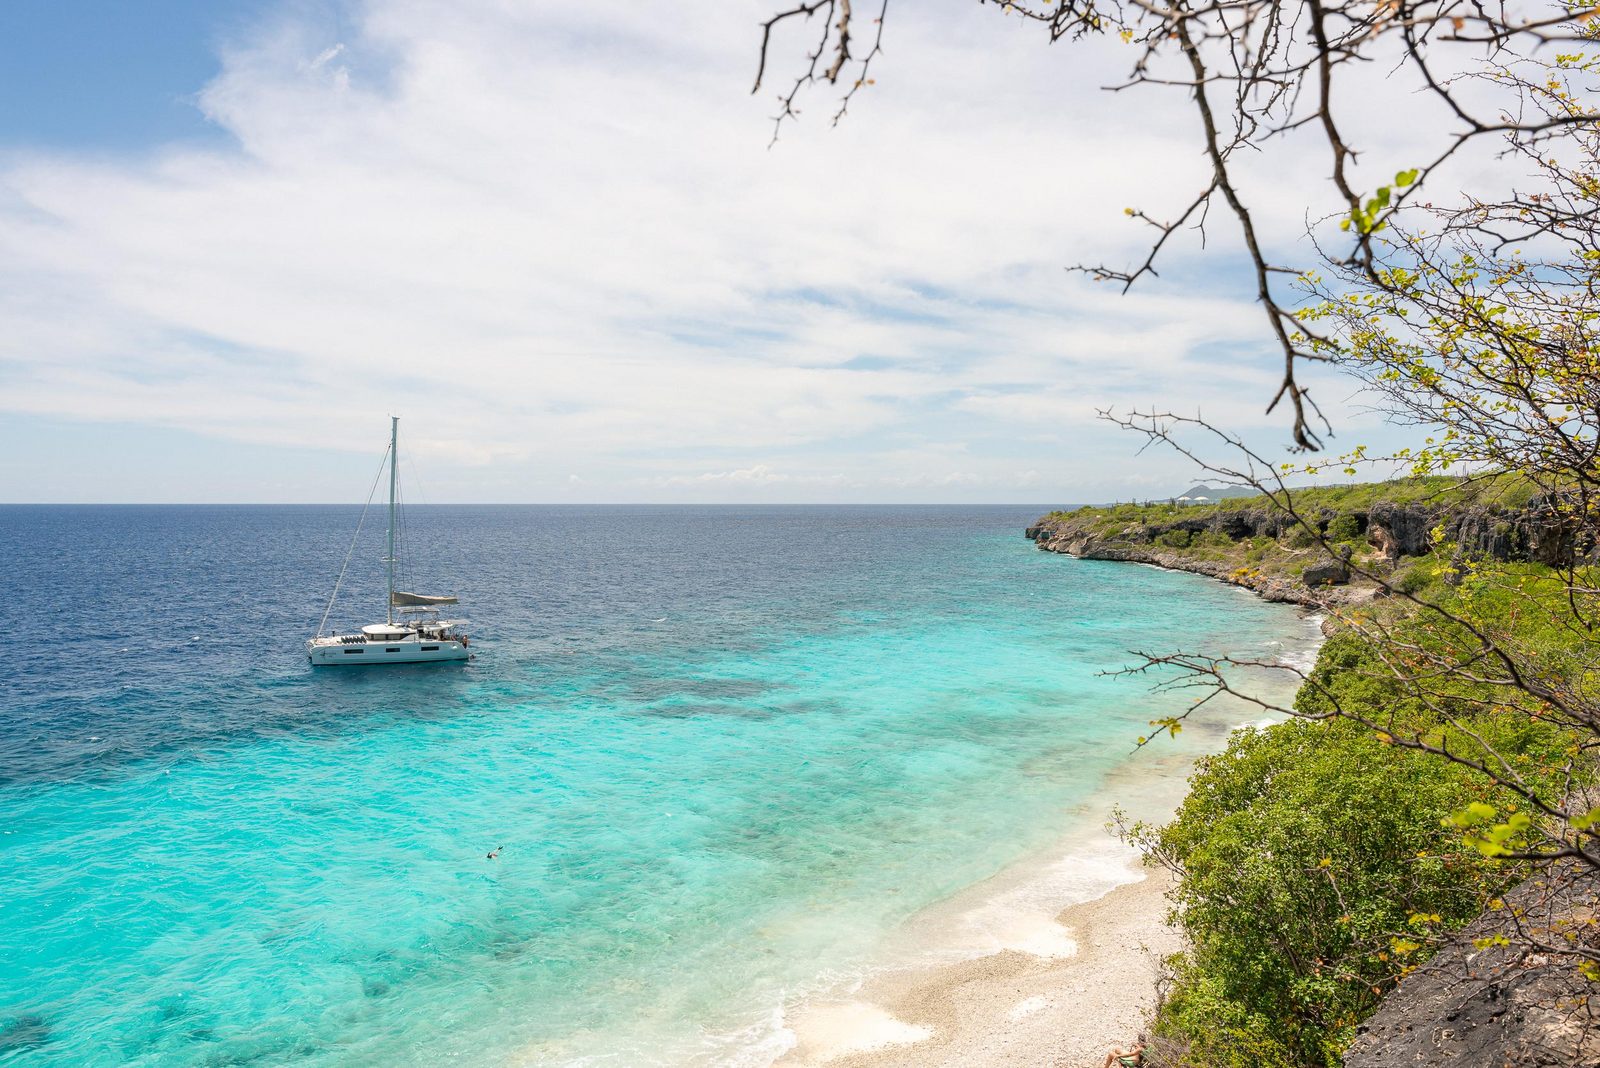 Bonaire ist die perfekte Insel, um Ihren Urlaub zu genießen, auch wenn Sie Kinder dabei haben. Alles in allem ist Bonaire ein kinderfreundliches Resort. Lesen Sie mehr über unser Resort.